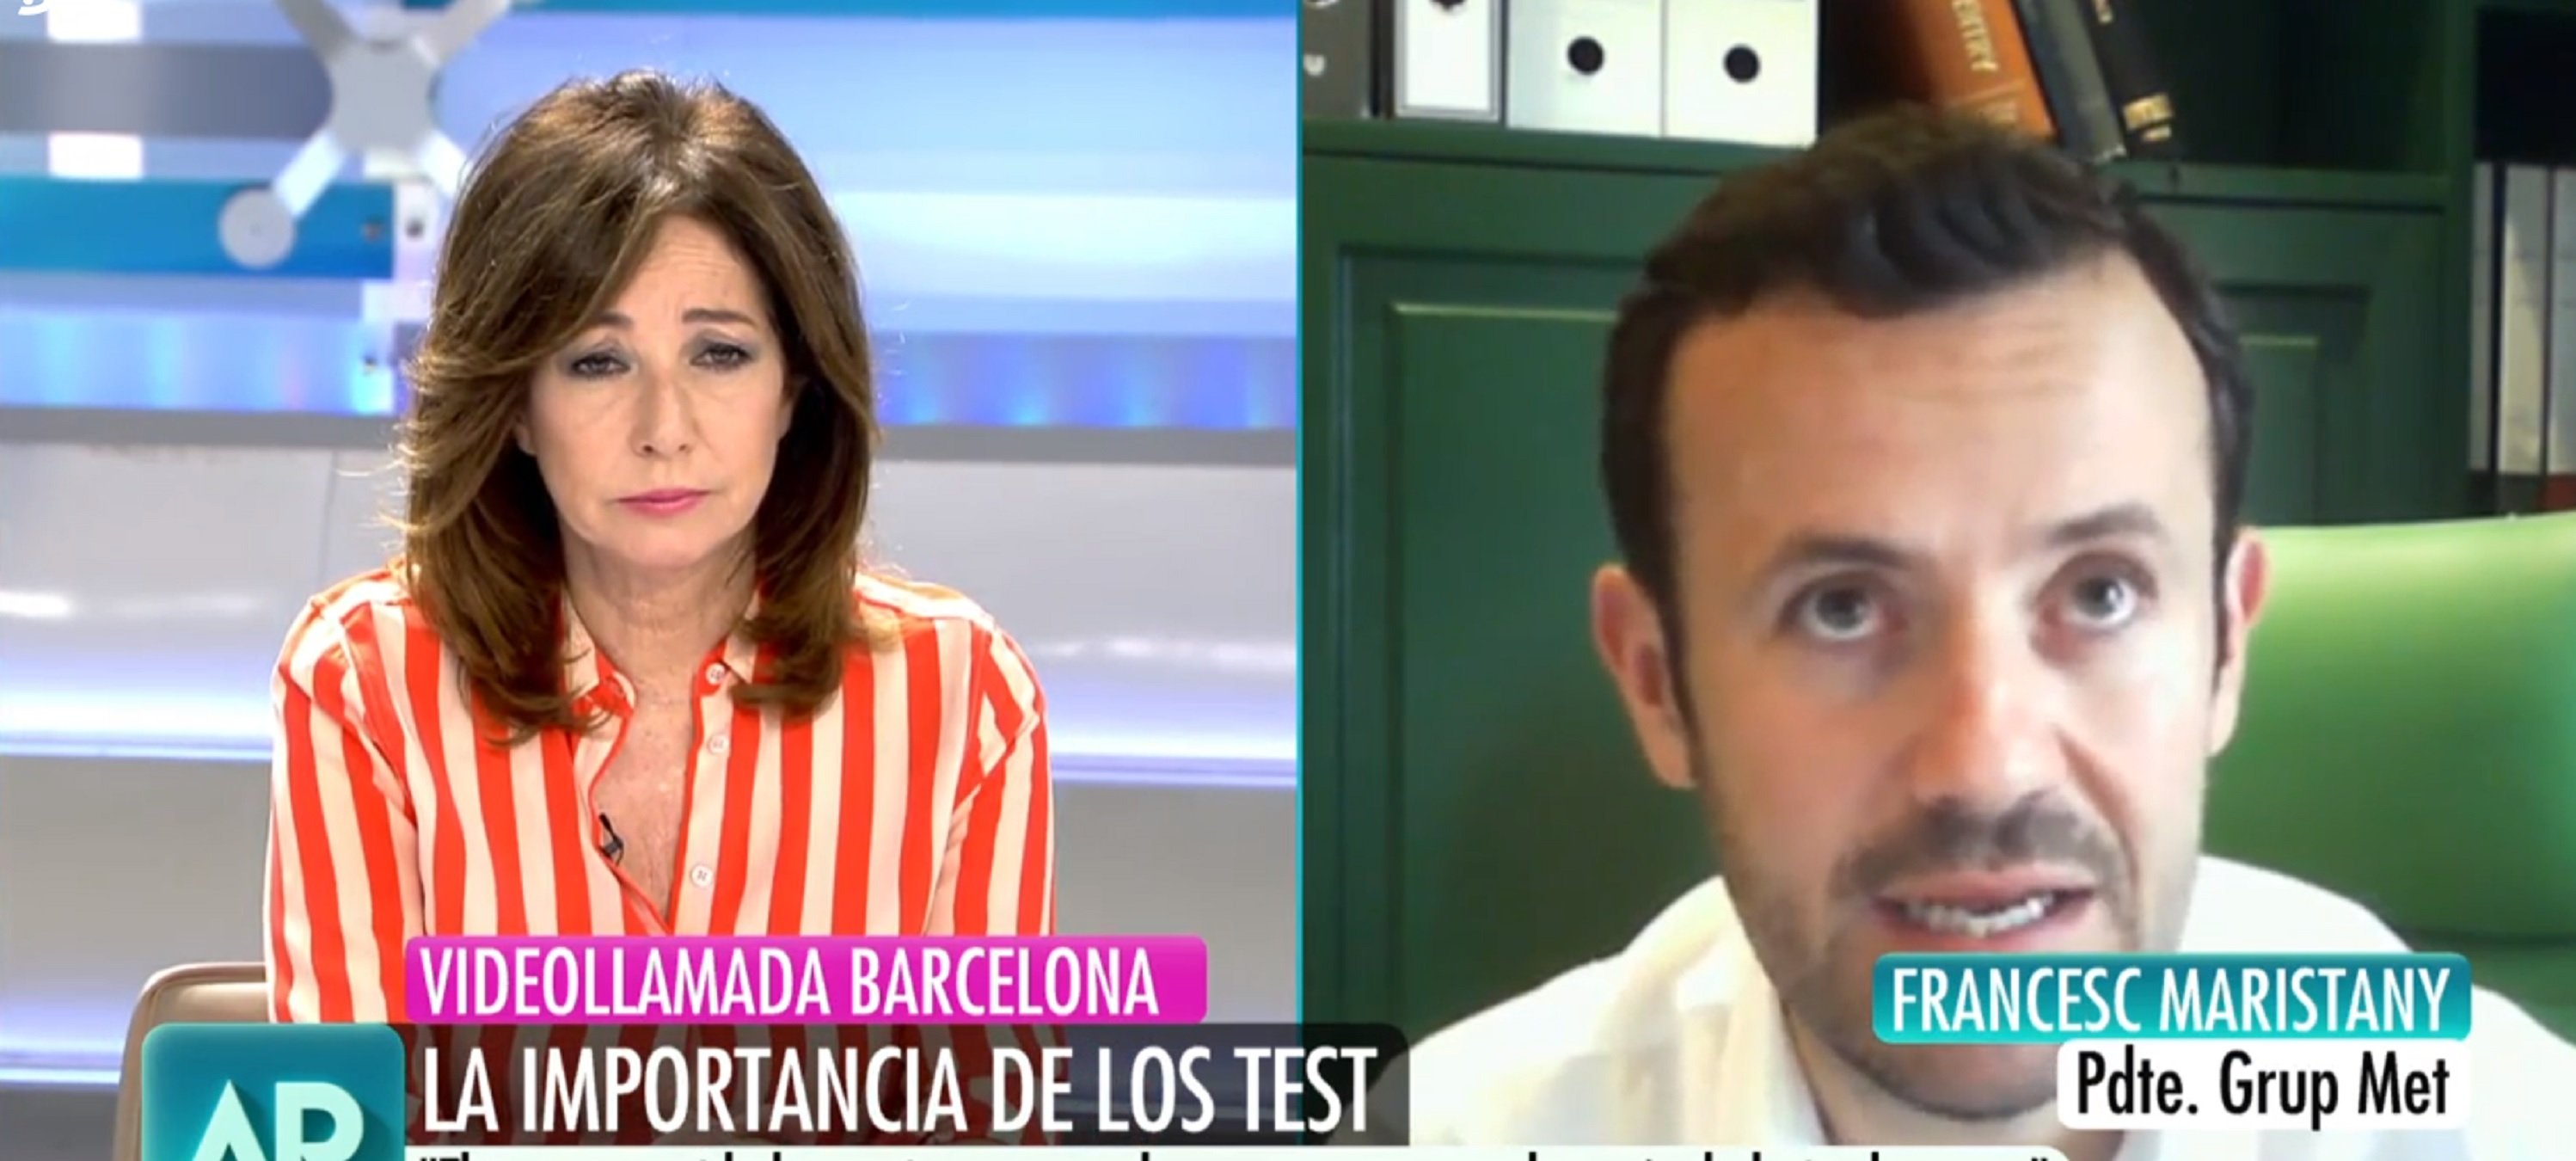 Ana Rosa Quintana i el català que ven tests PCR destrossen el govern d'Espanya